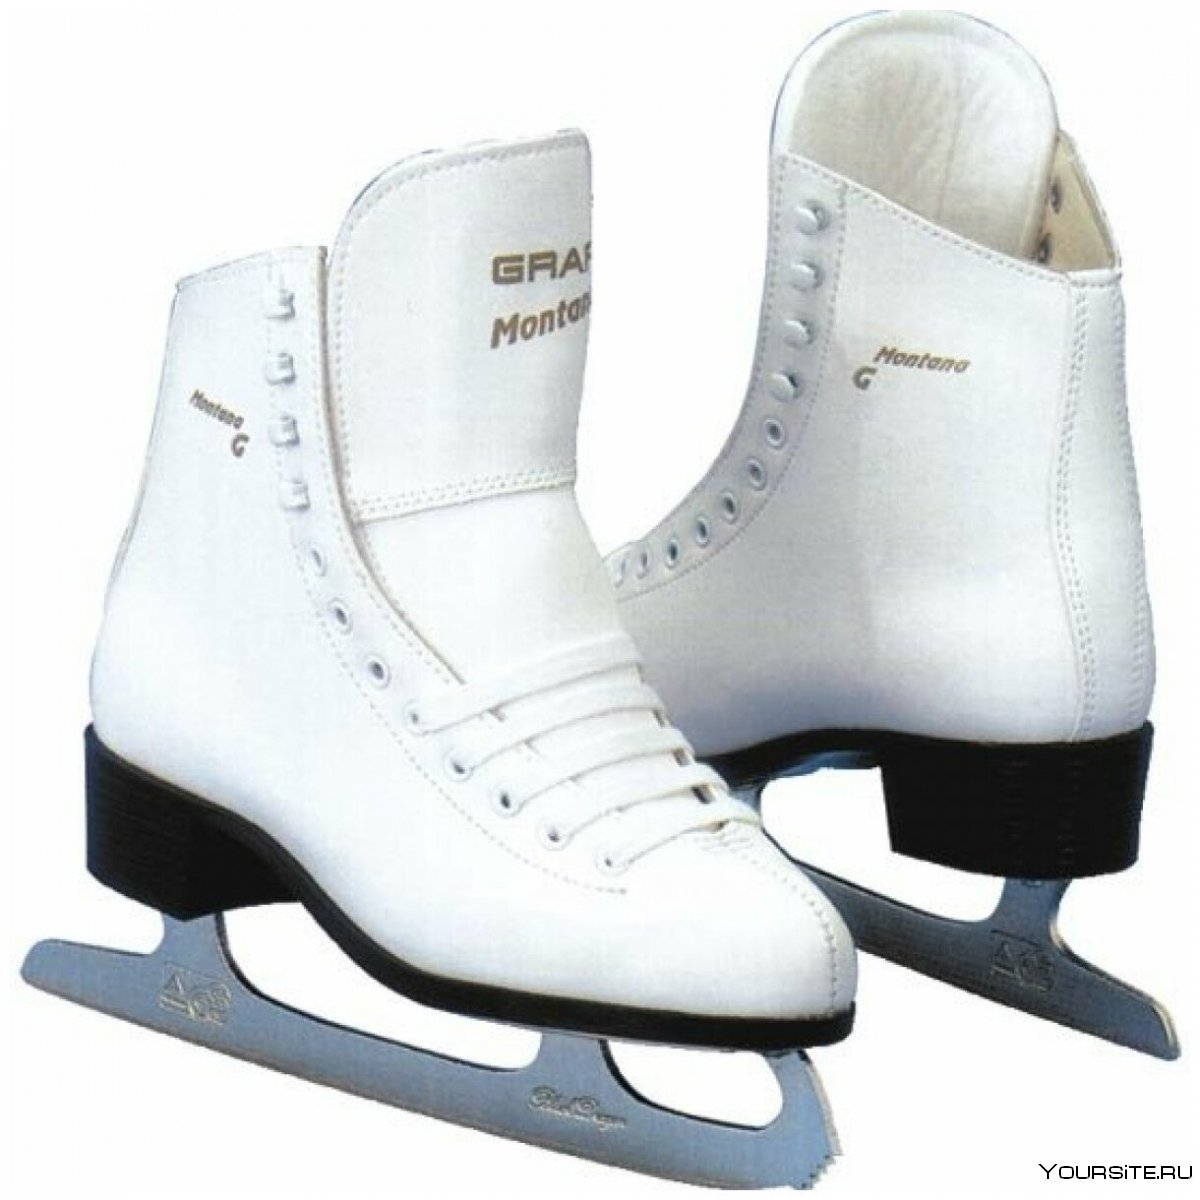 Хоккейные коньки Vimpex Sport pw-216